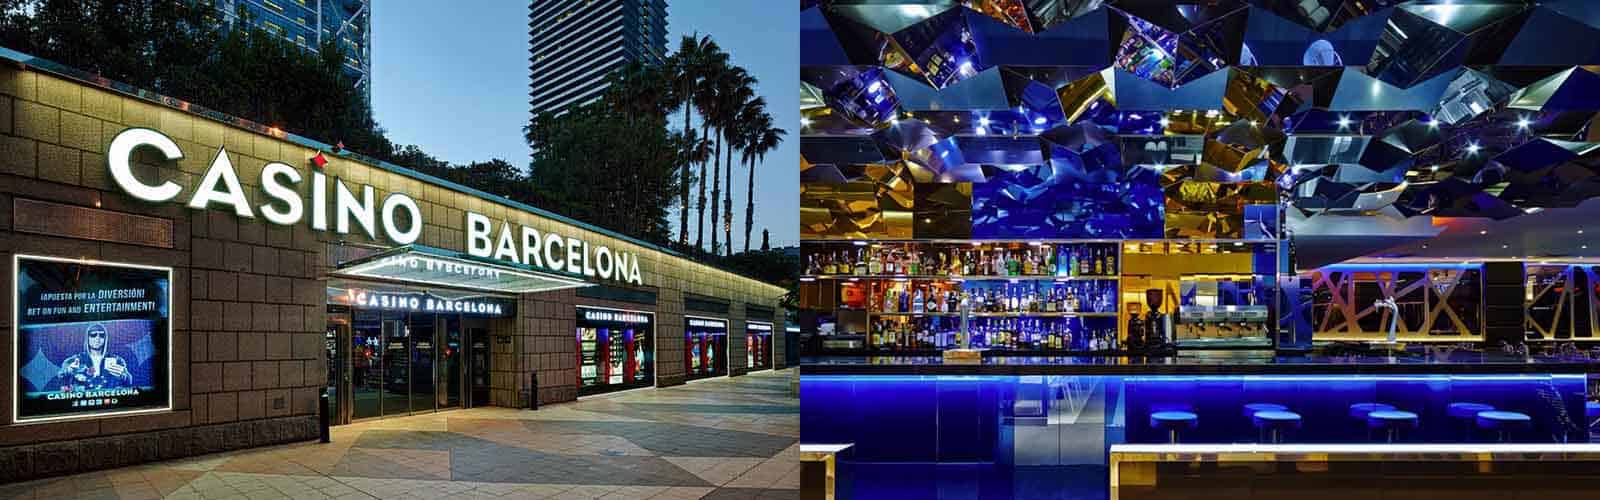 Casino Barcelona | Entrada + bebida gratis | Nightlife